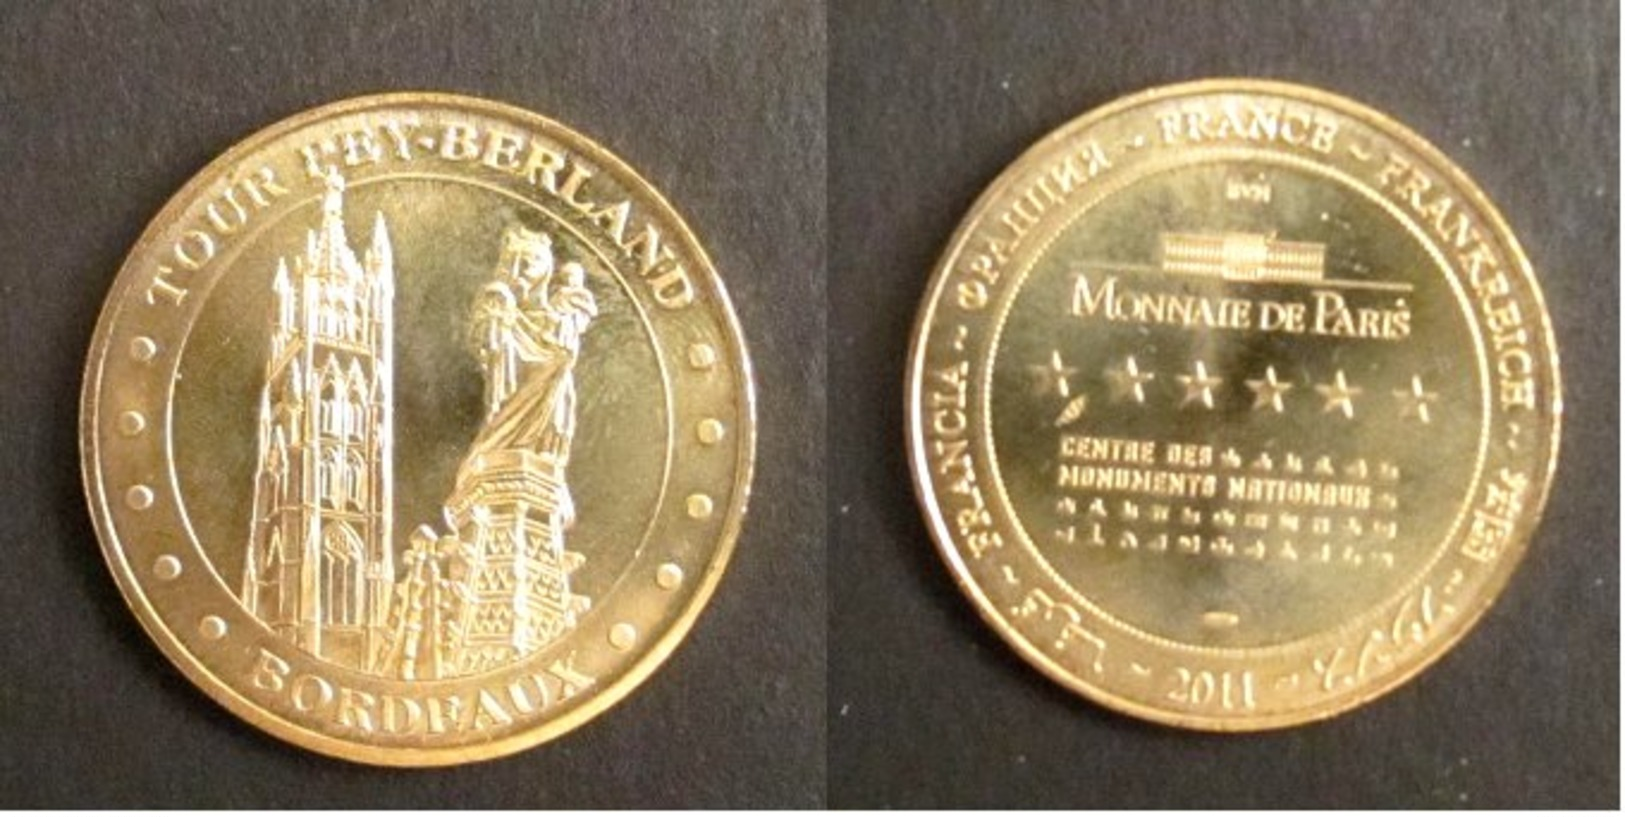 A156 Médaille Touristique Monnaie De Paris Tour Pey-Berland à Bordeaux 2011 - 2011